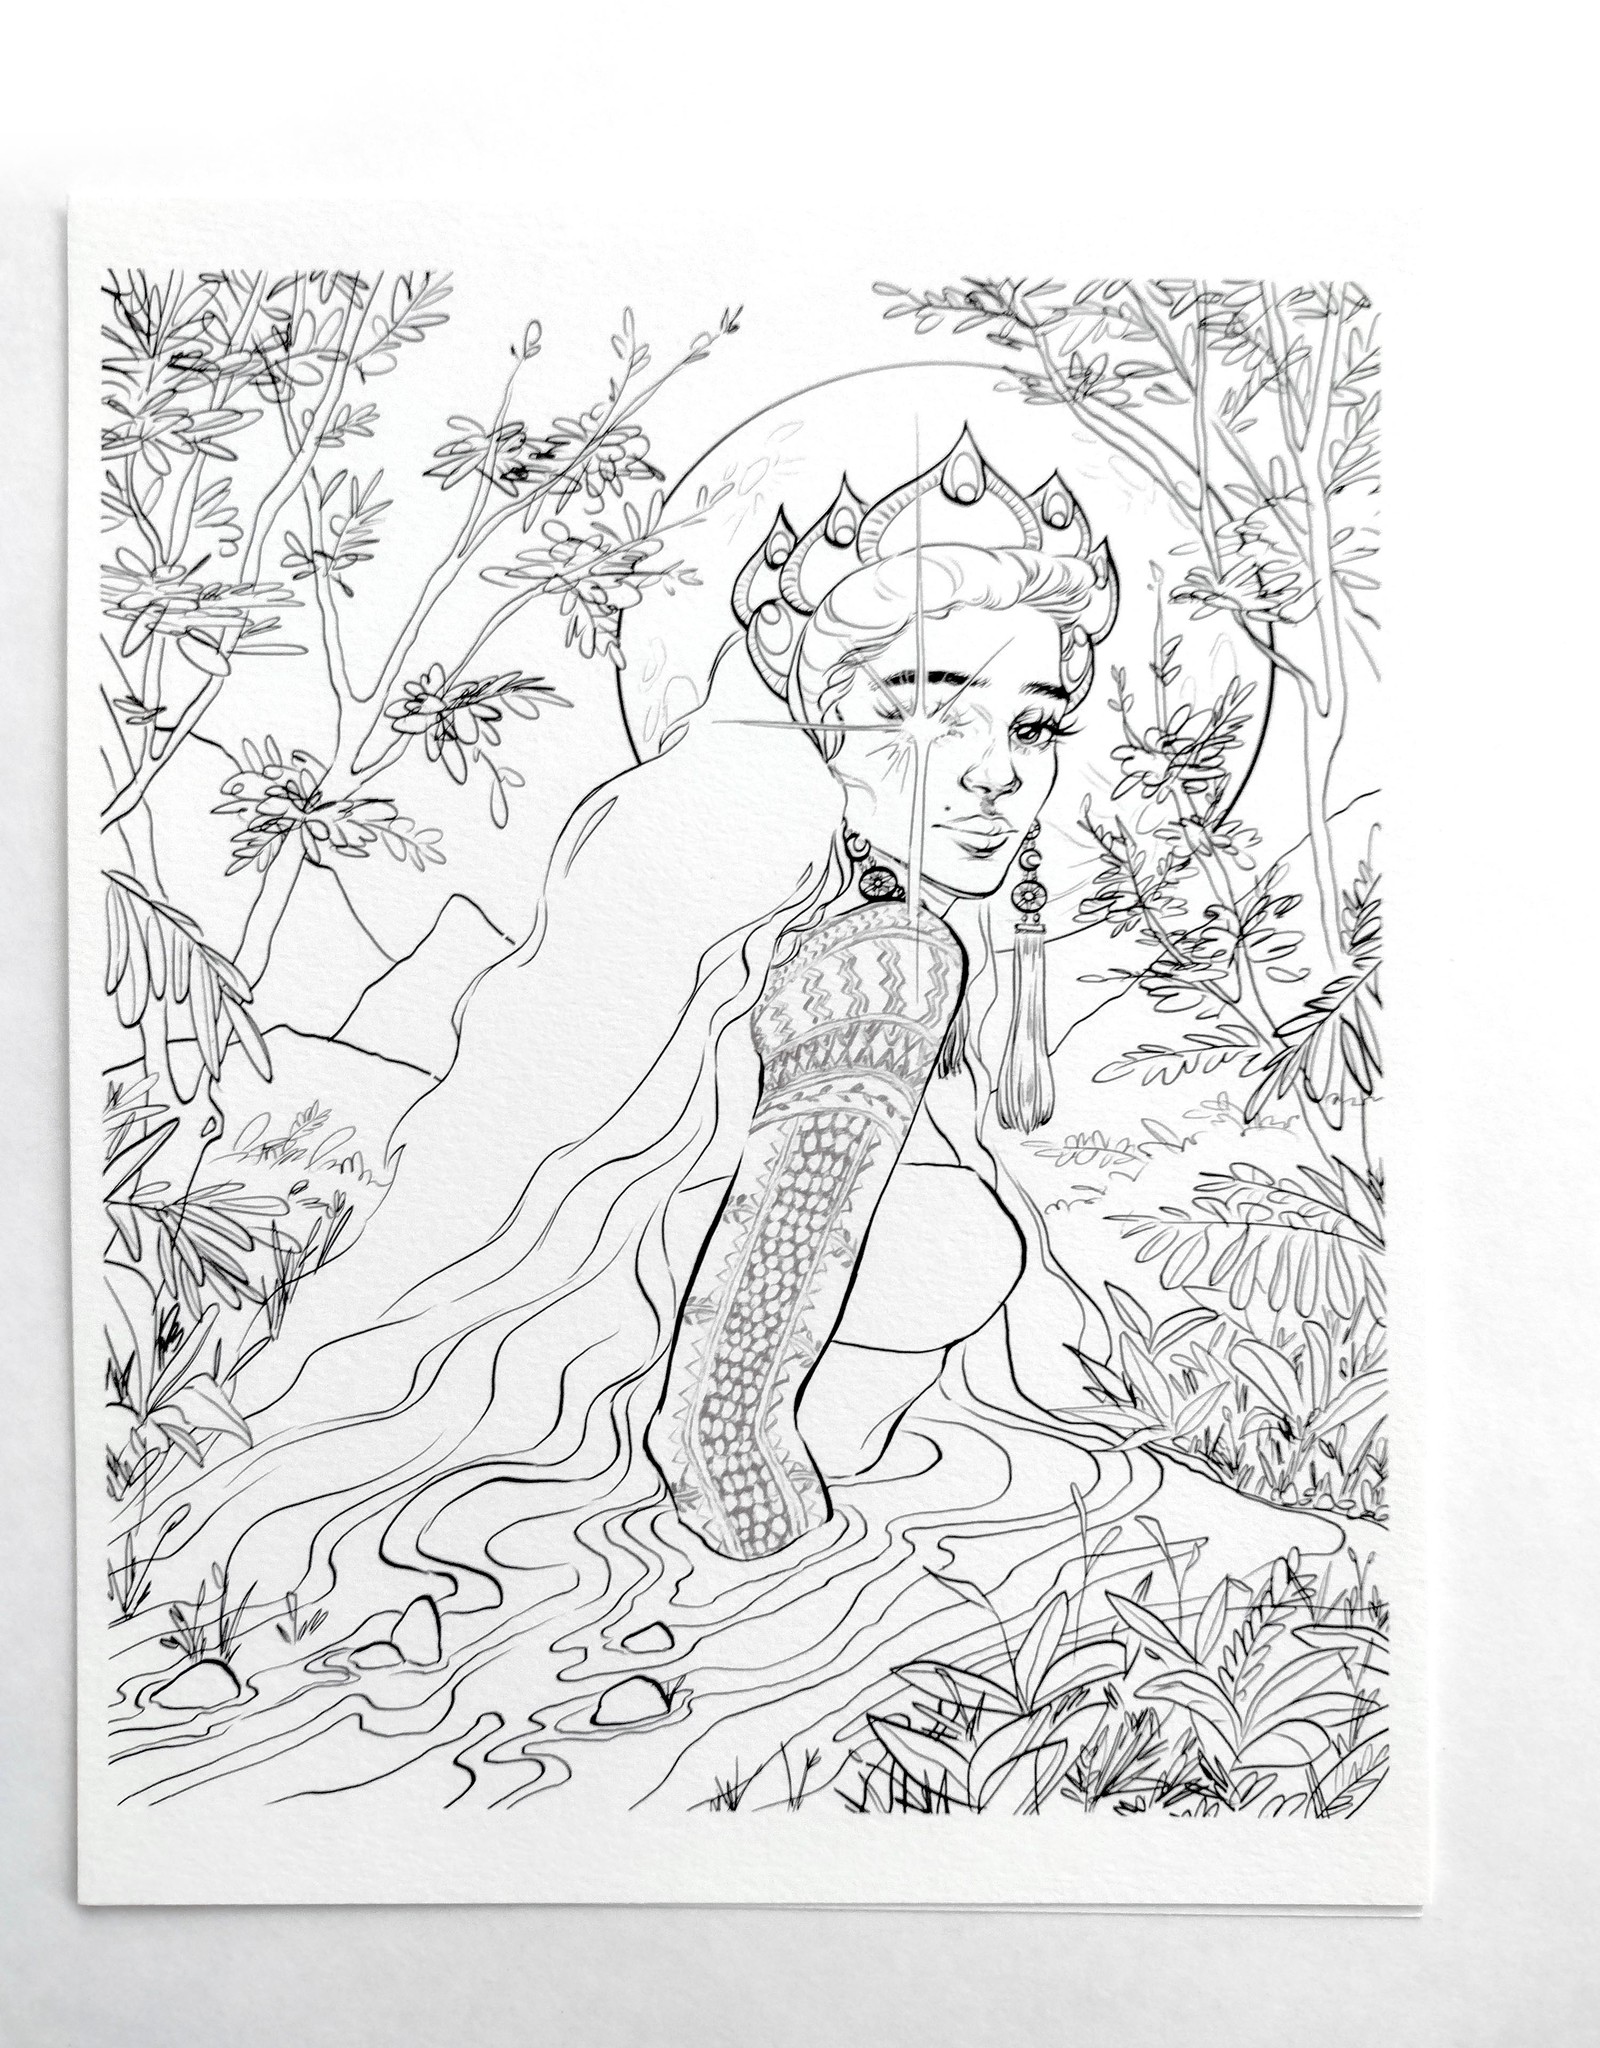 Kristel Becares "Dark Mythology" Coloring Page Pack by Kristel Becares / KRISTEL, INC.